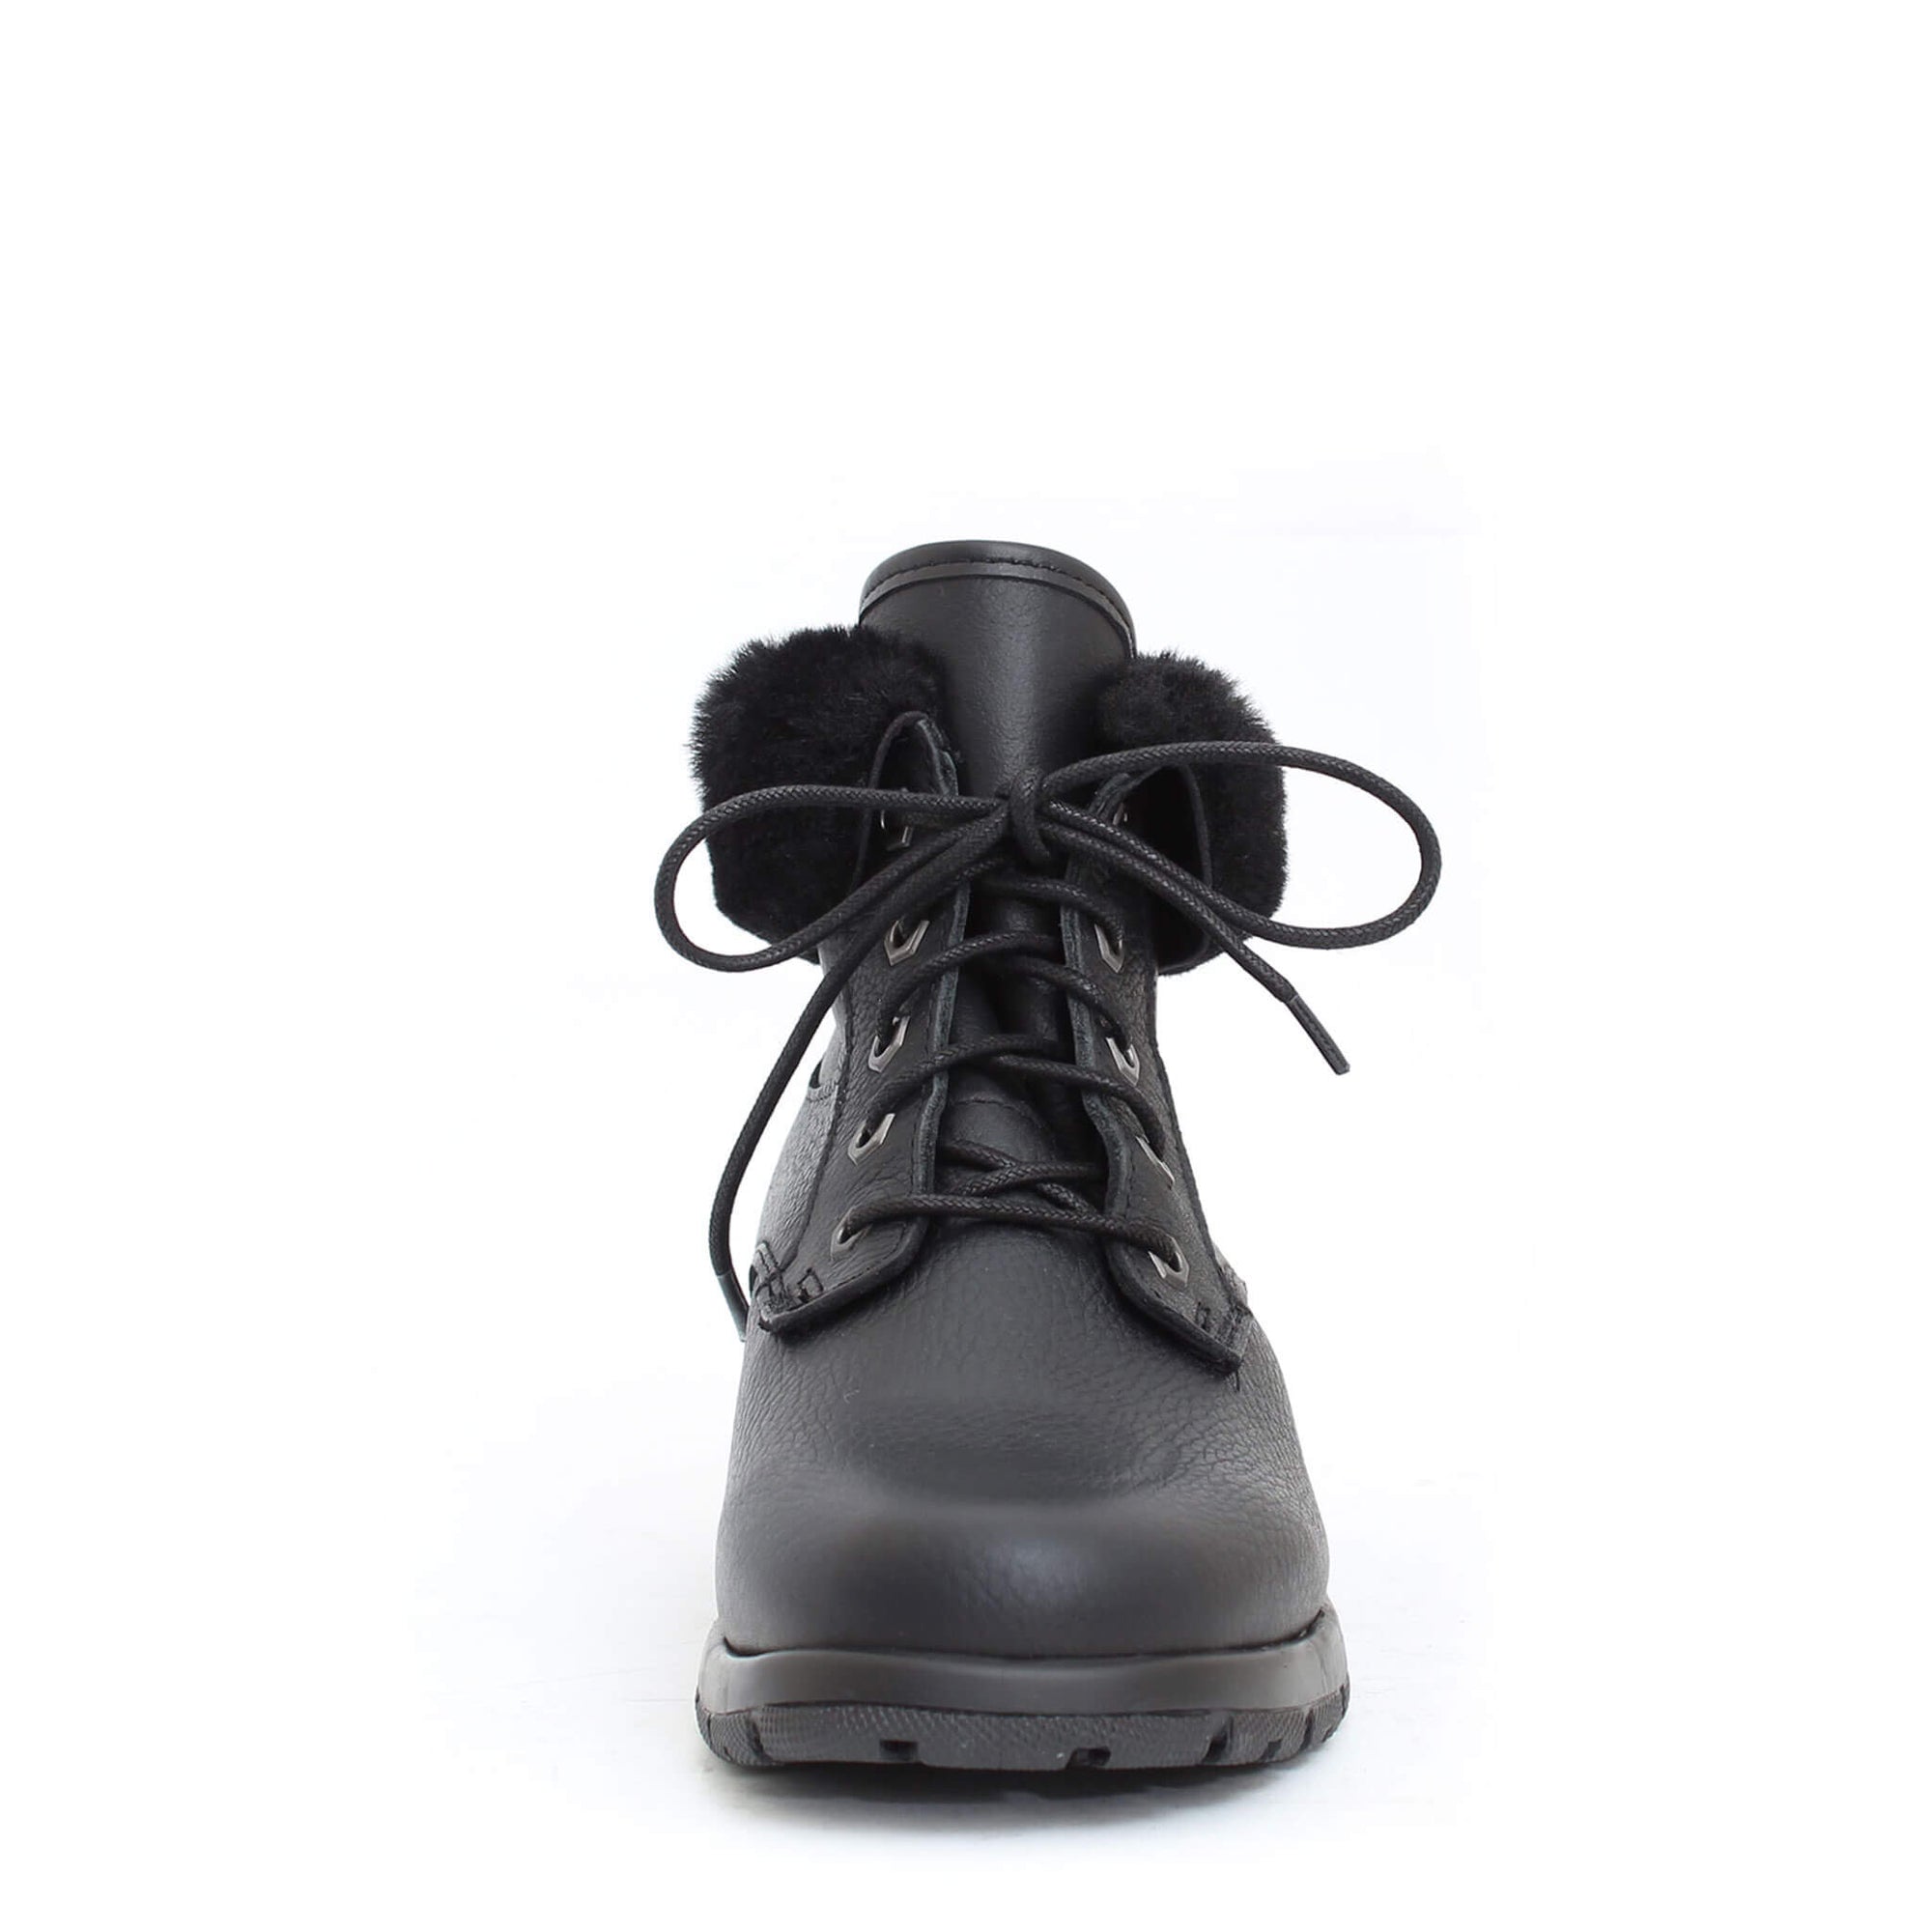 Minnesota-2 winter boot for women - Black